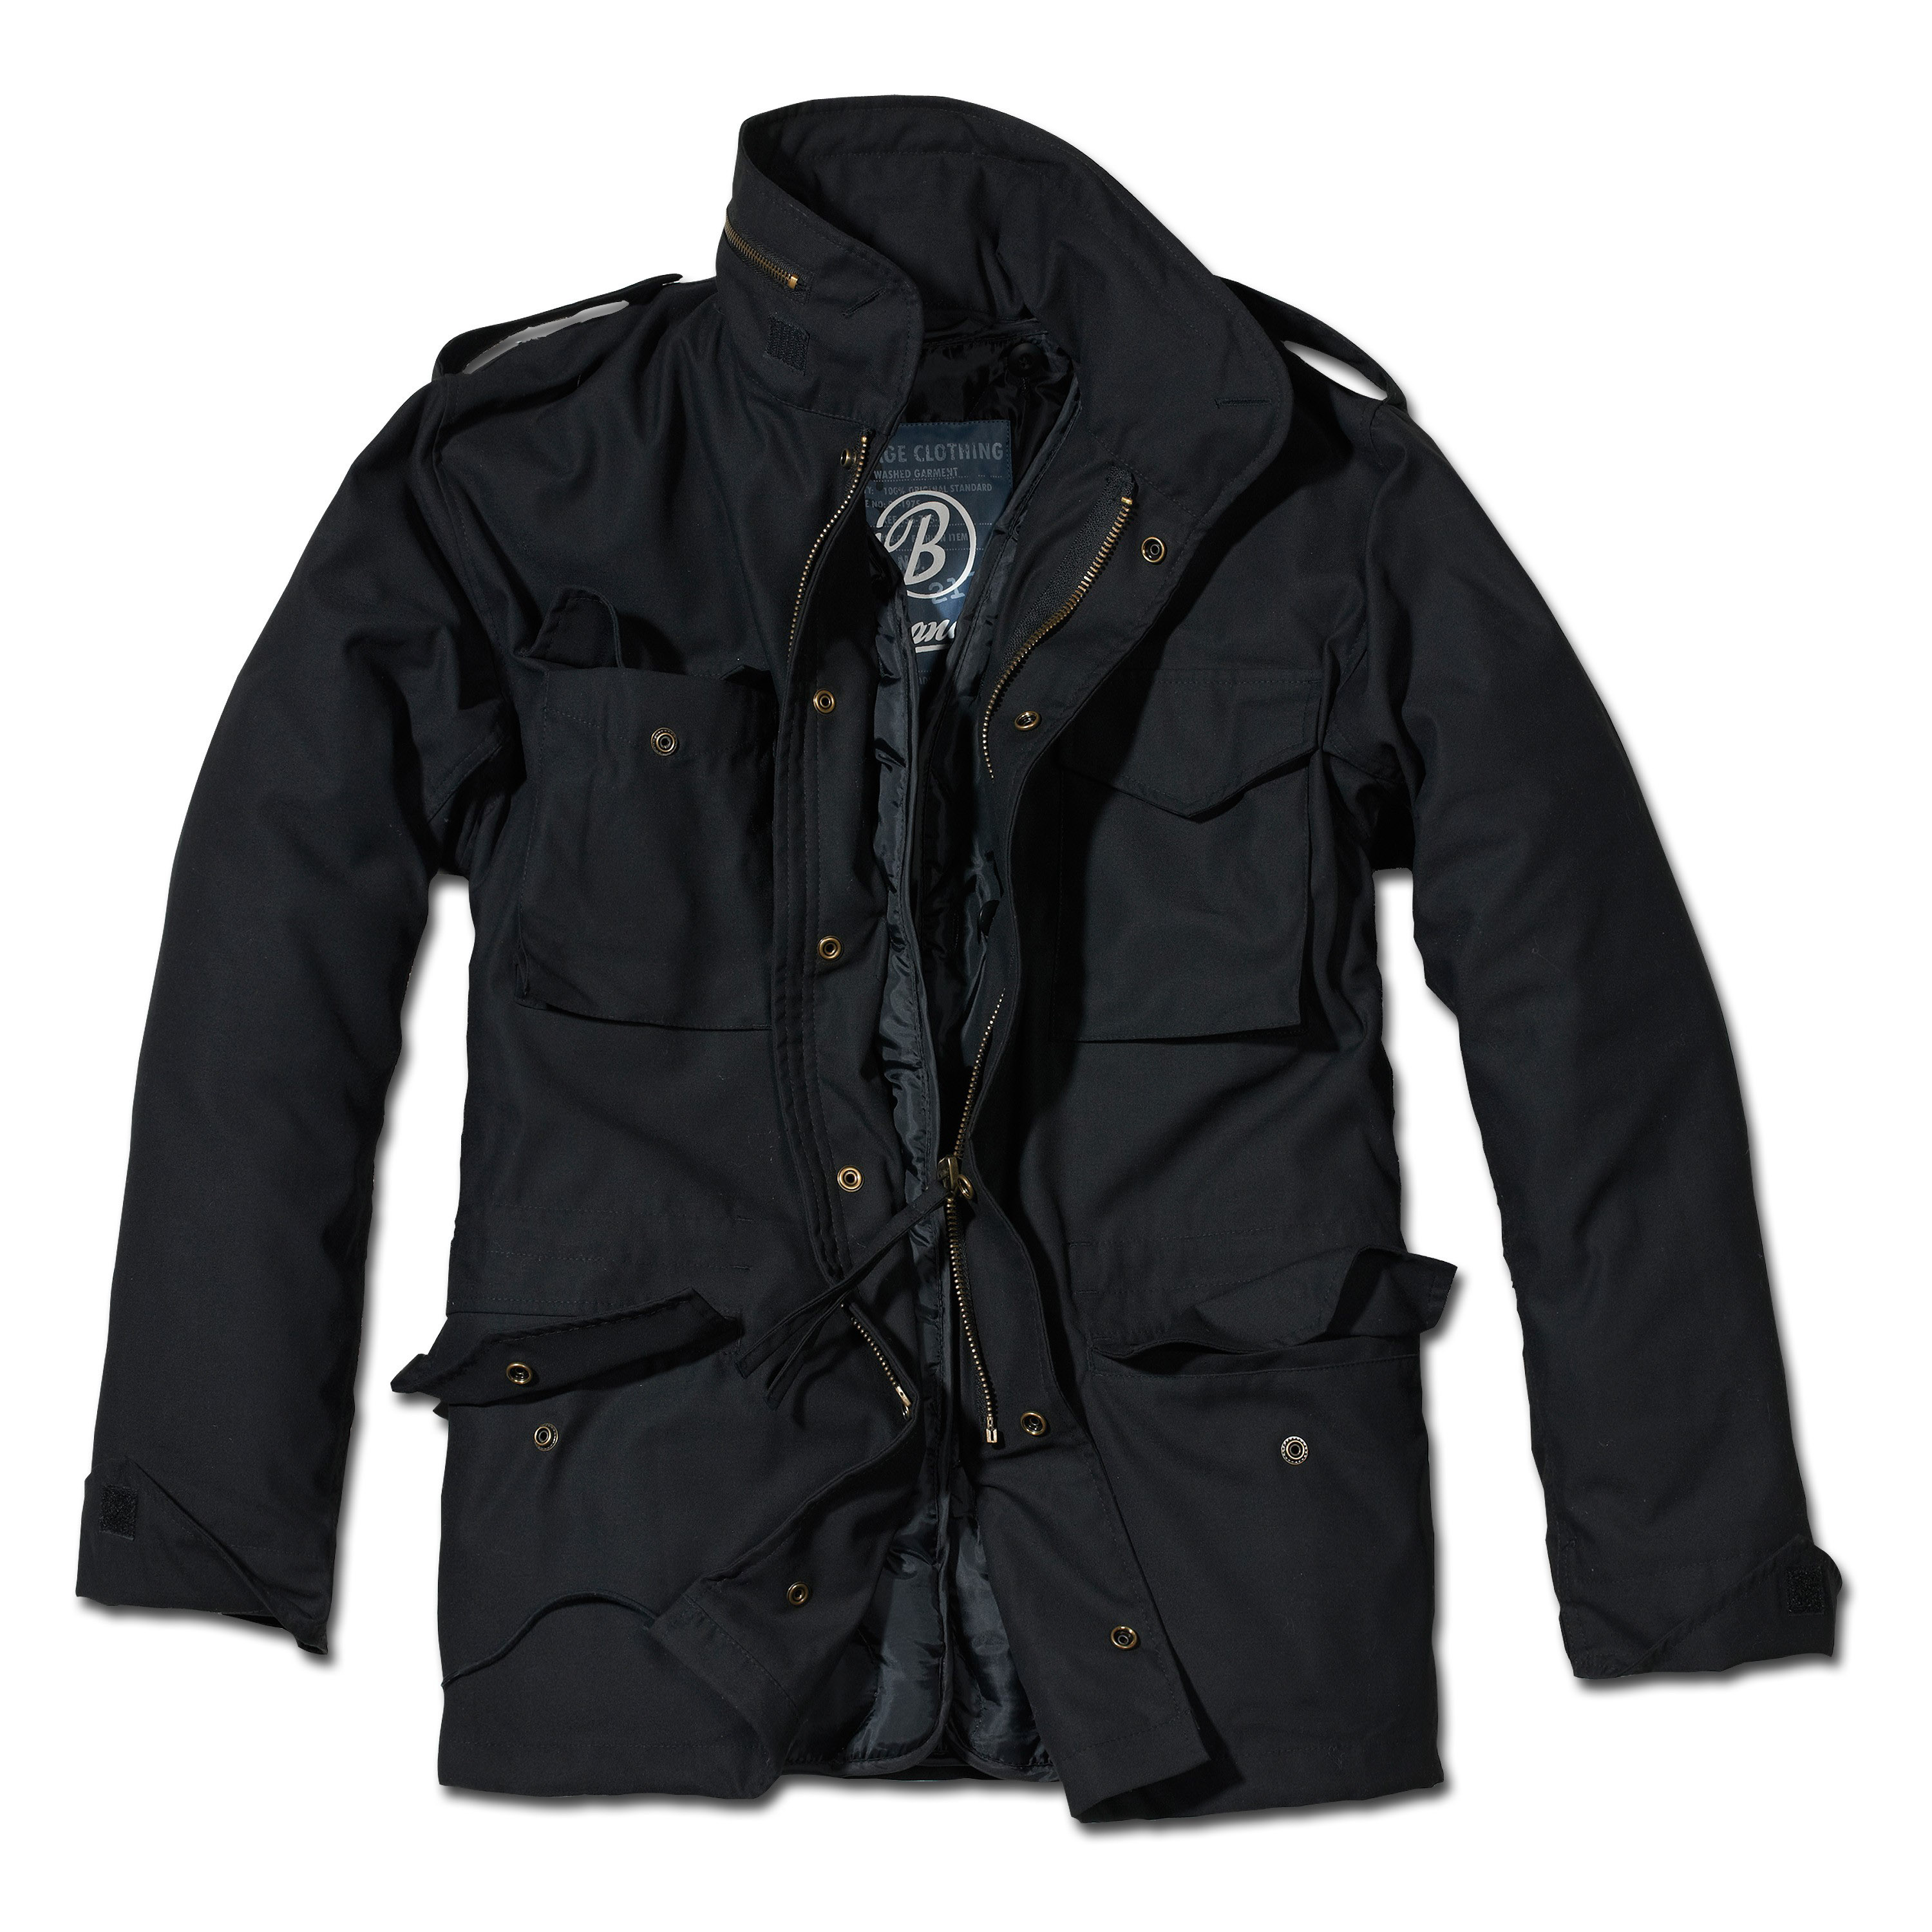 Куртка мужская купить в гомеле. Brandit m65. M65 Standard Brandit. Куртка m65 Standard Brandit Black. M-65 Classic Brandit.